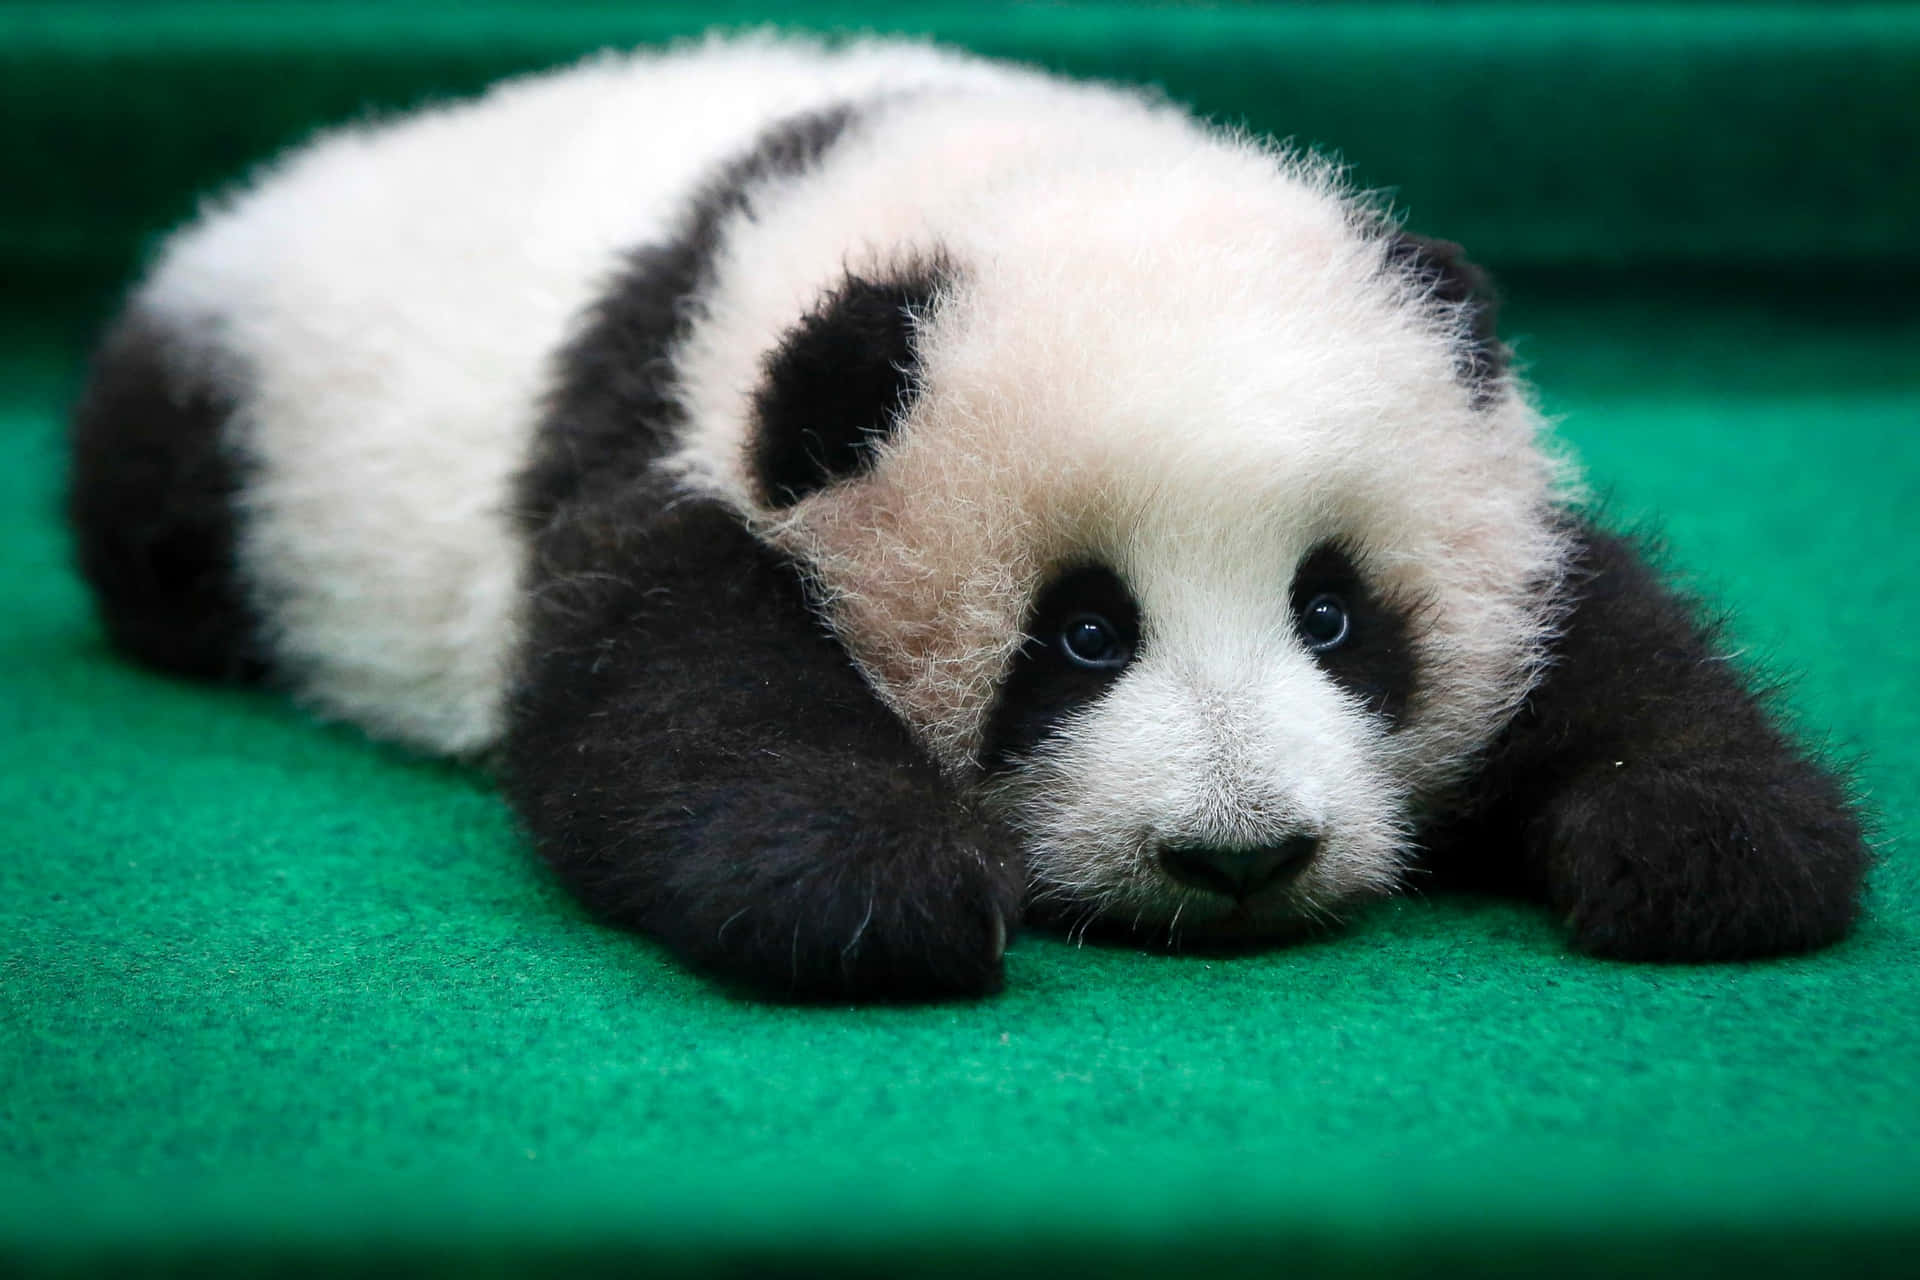 panda - Cute-Panda